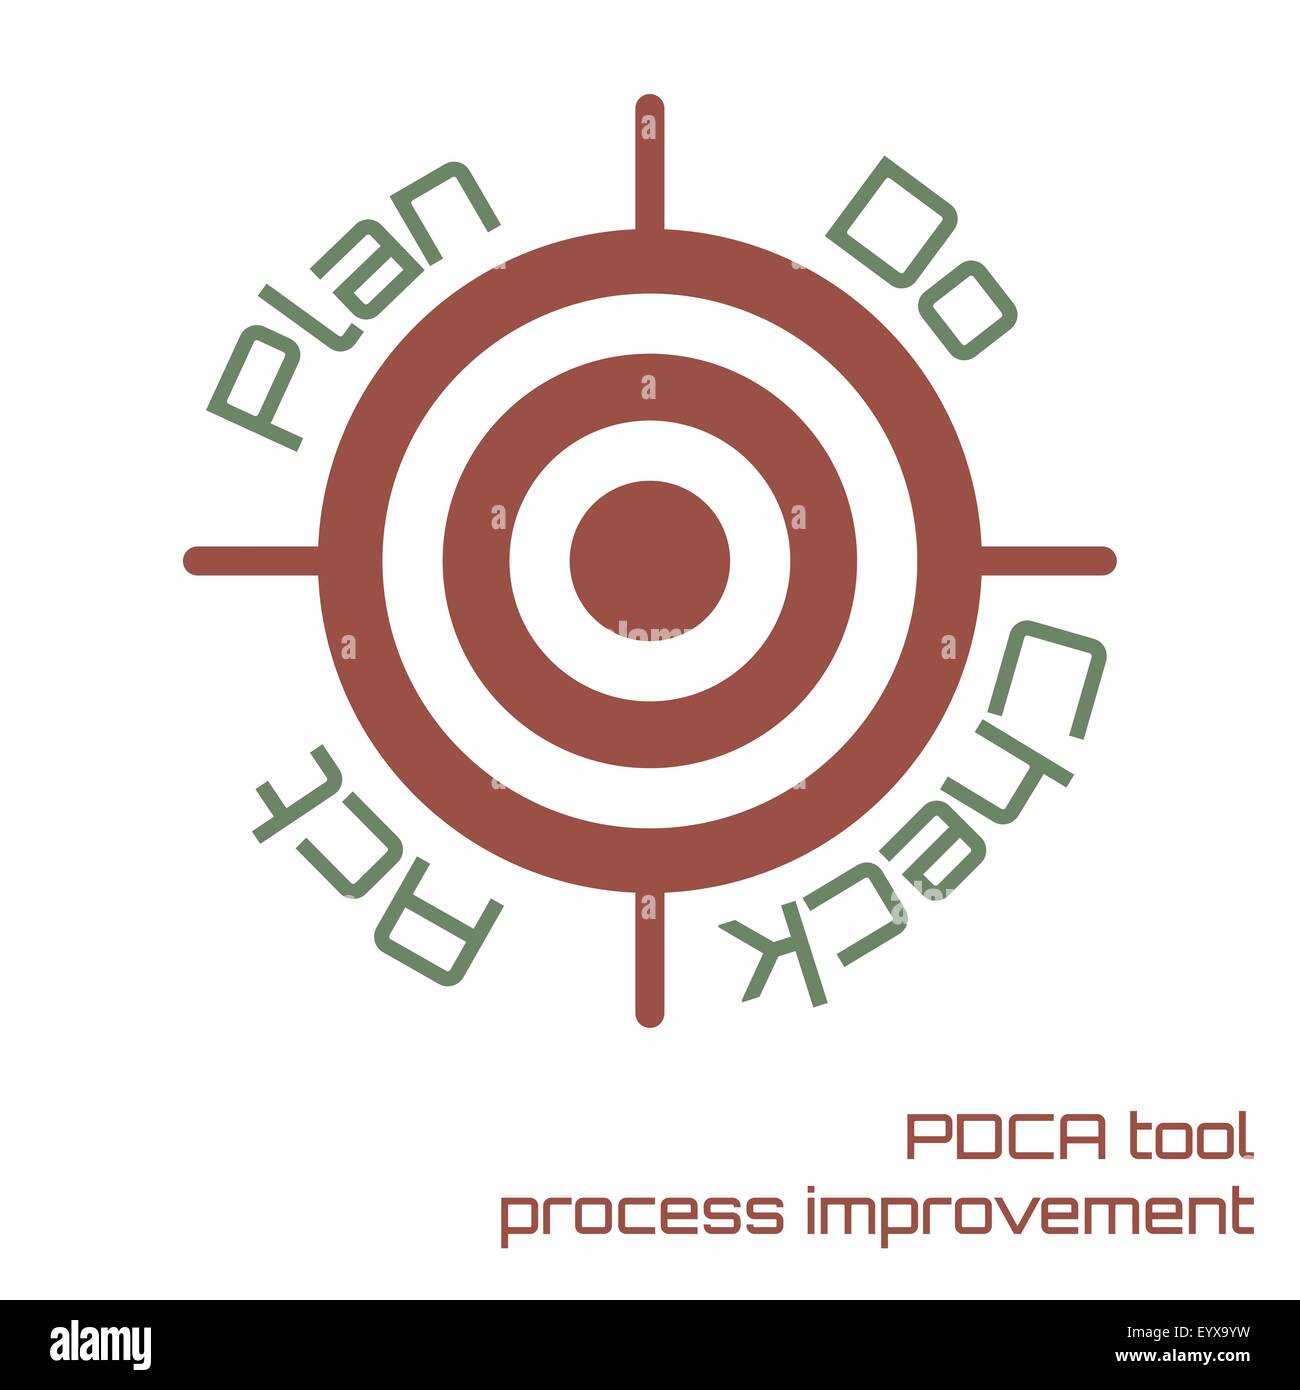 Verbesserung der PDCA Prozesstool Business-Ziel-Vektor-Illustration zu erreichen. Stock Vektor